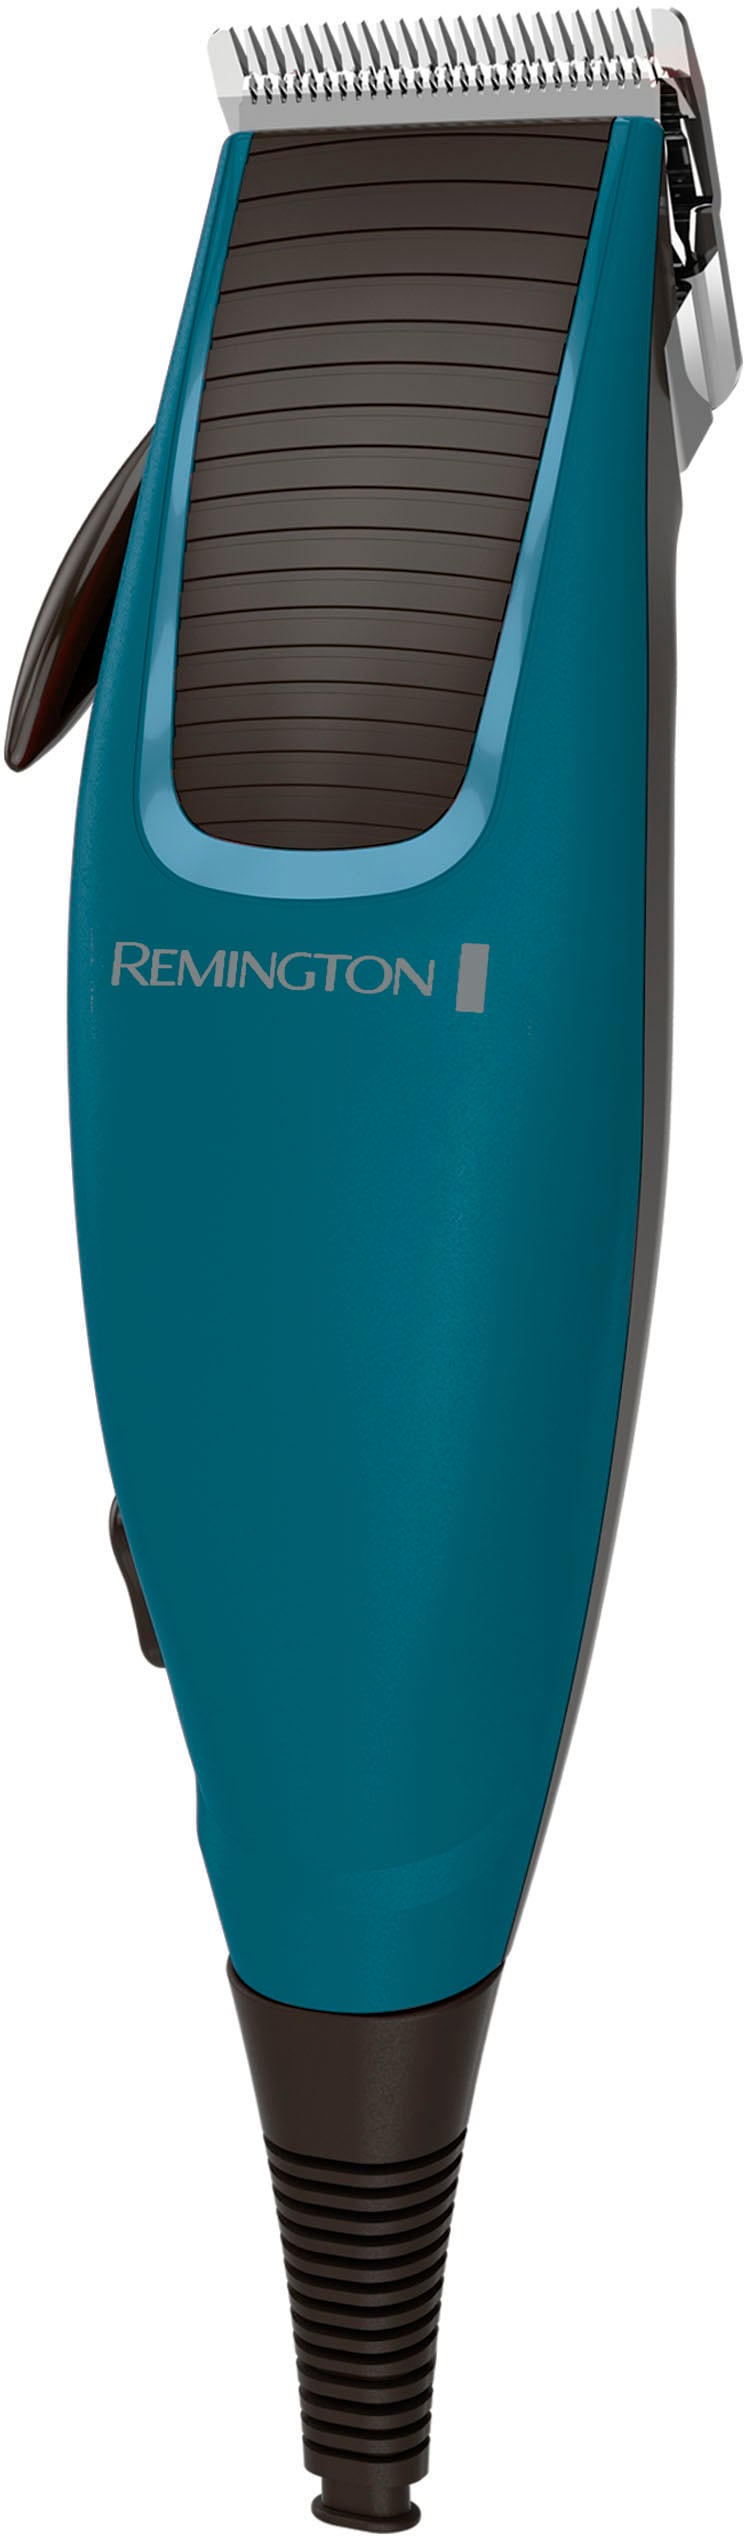 Remington Haarschneider »Apprentice HC5020«, 5 Aufsätze, mit viel Zubehör